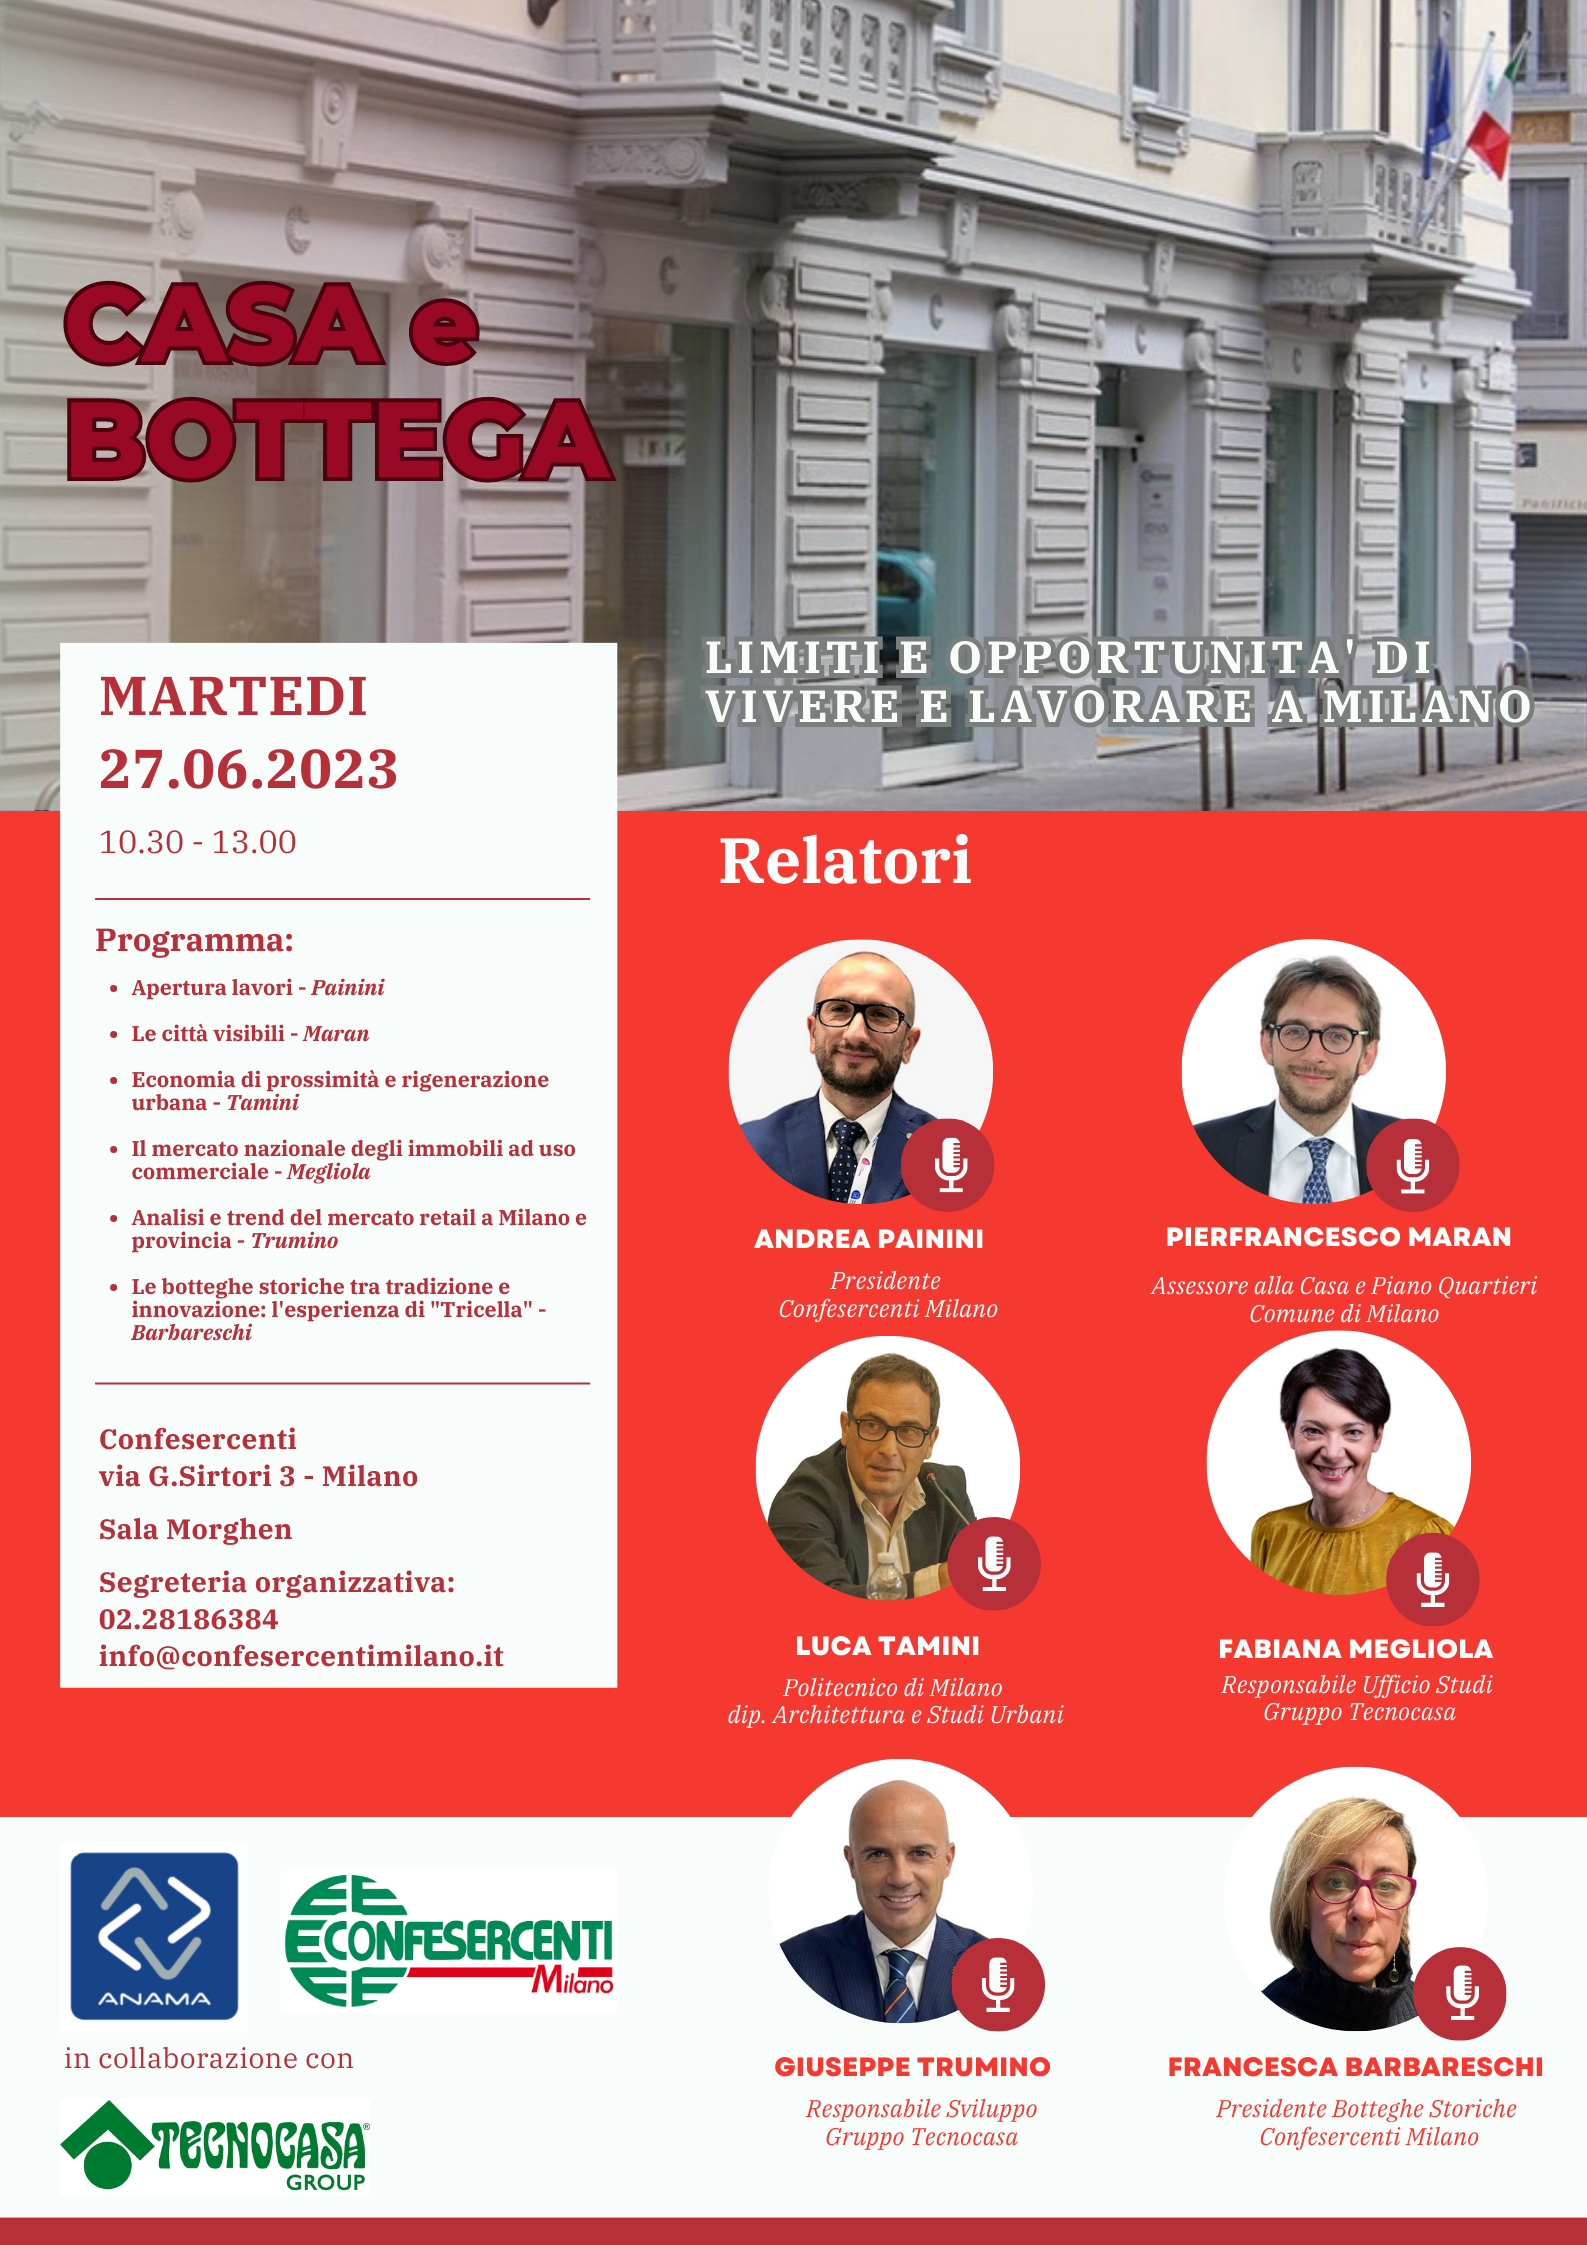 27.06.2023 convegno ANAMA Milano: Casa e Bottega: limiti e opportunità di vivere e lavorare a Milano